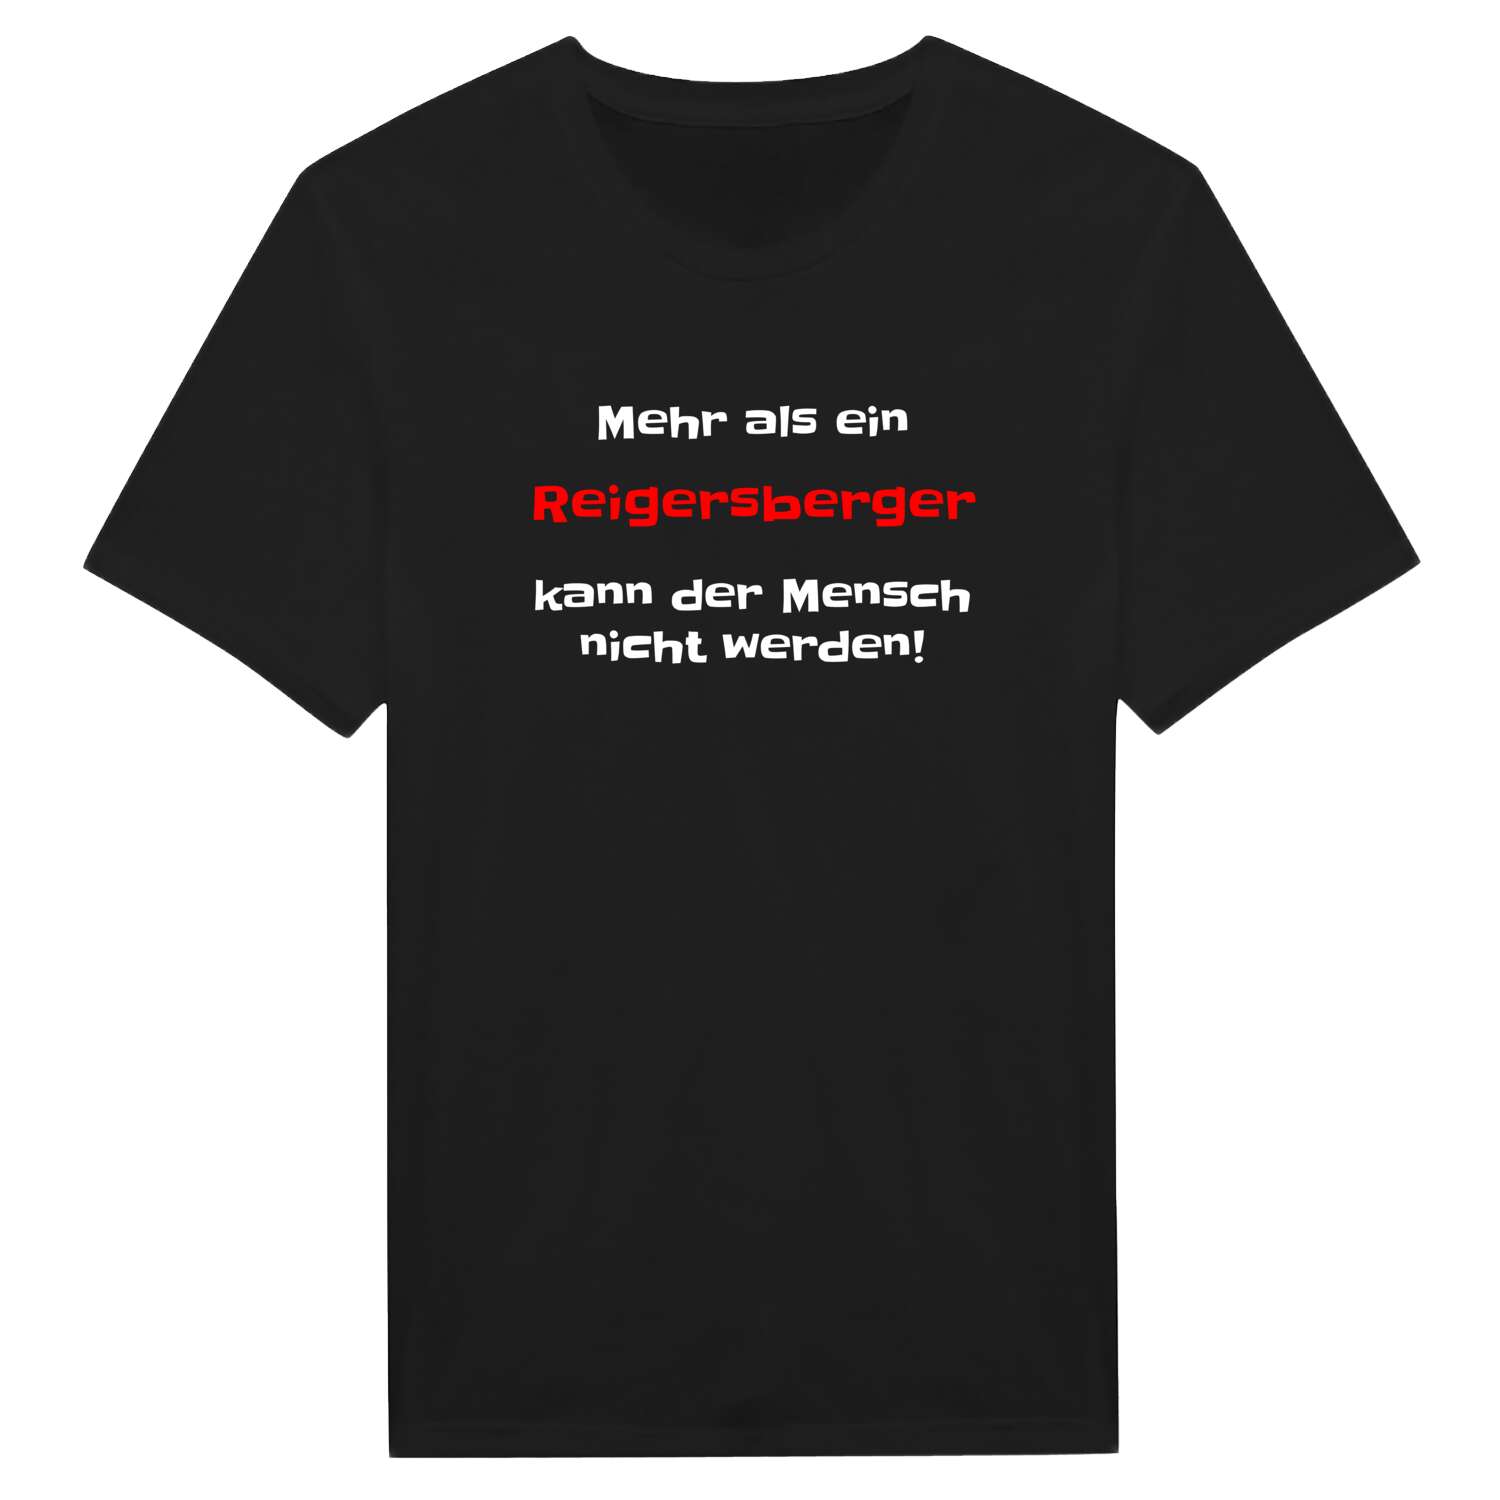 Reigersberg T-Shirt »Mehr als ein«